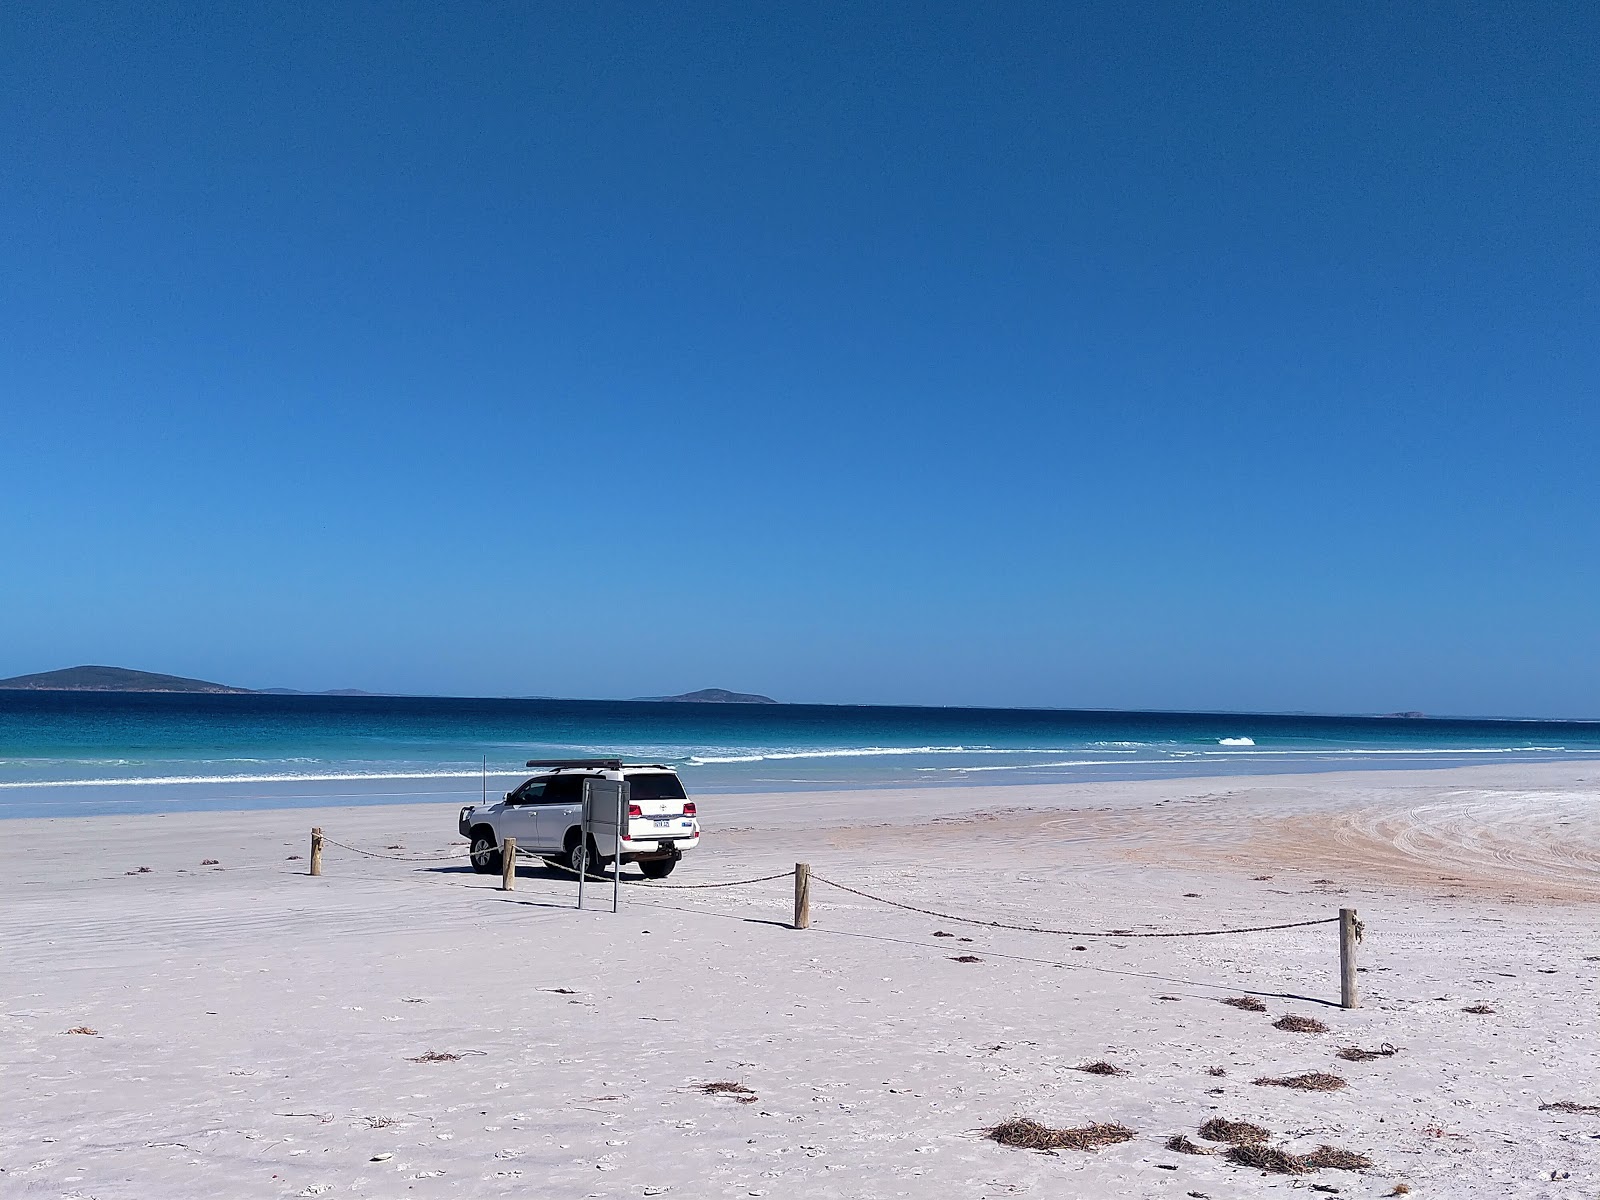 Foto af Cape Le Grand Beach - populært sted blandt afslapningskendere